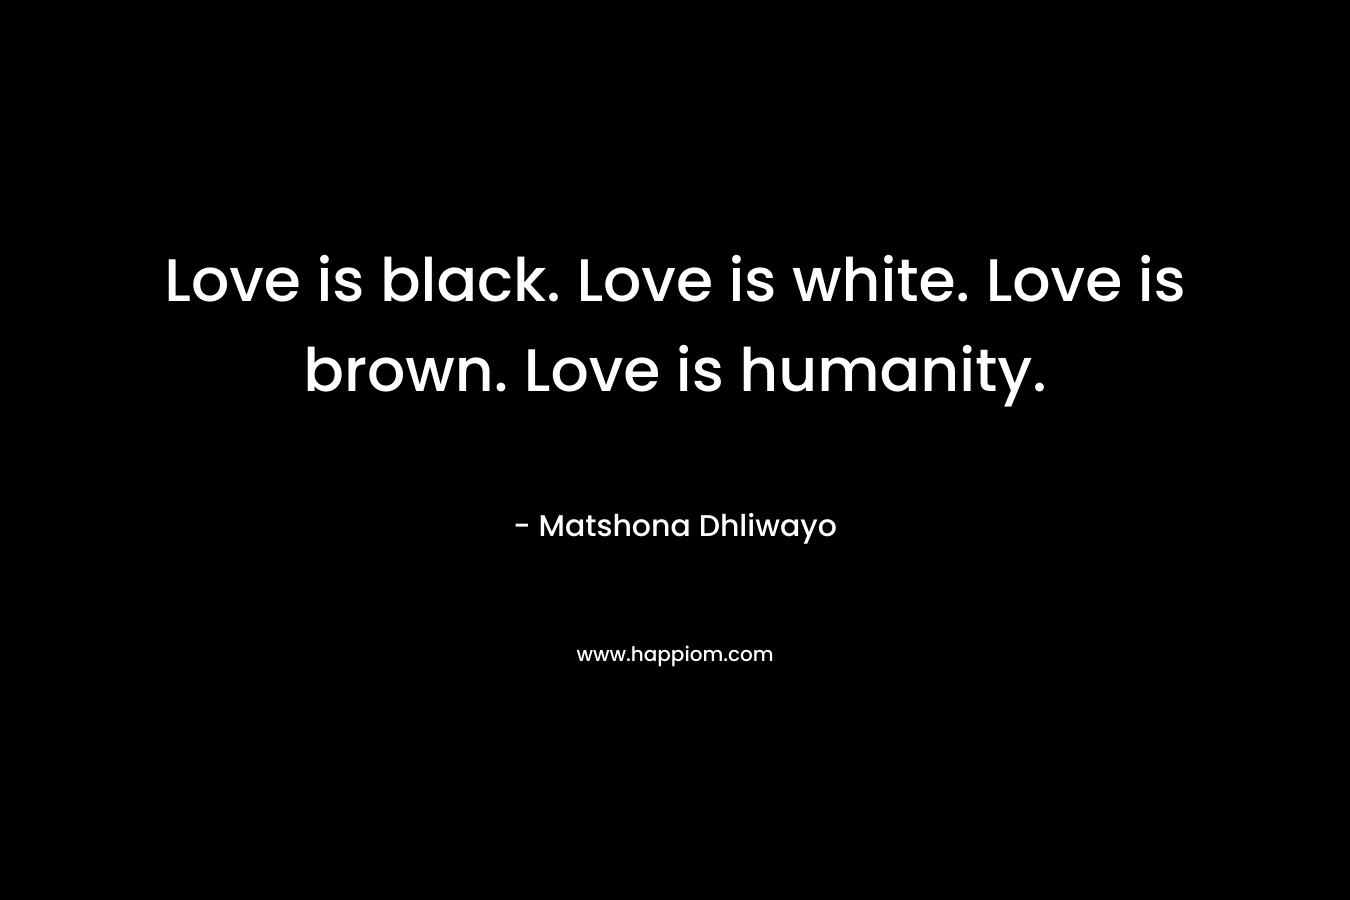 Love is black. Love is white. Love is brown. Love is humanity.